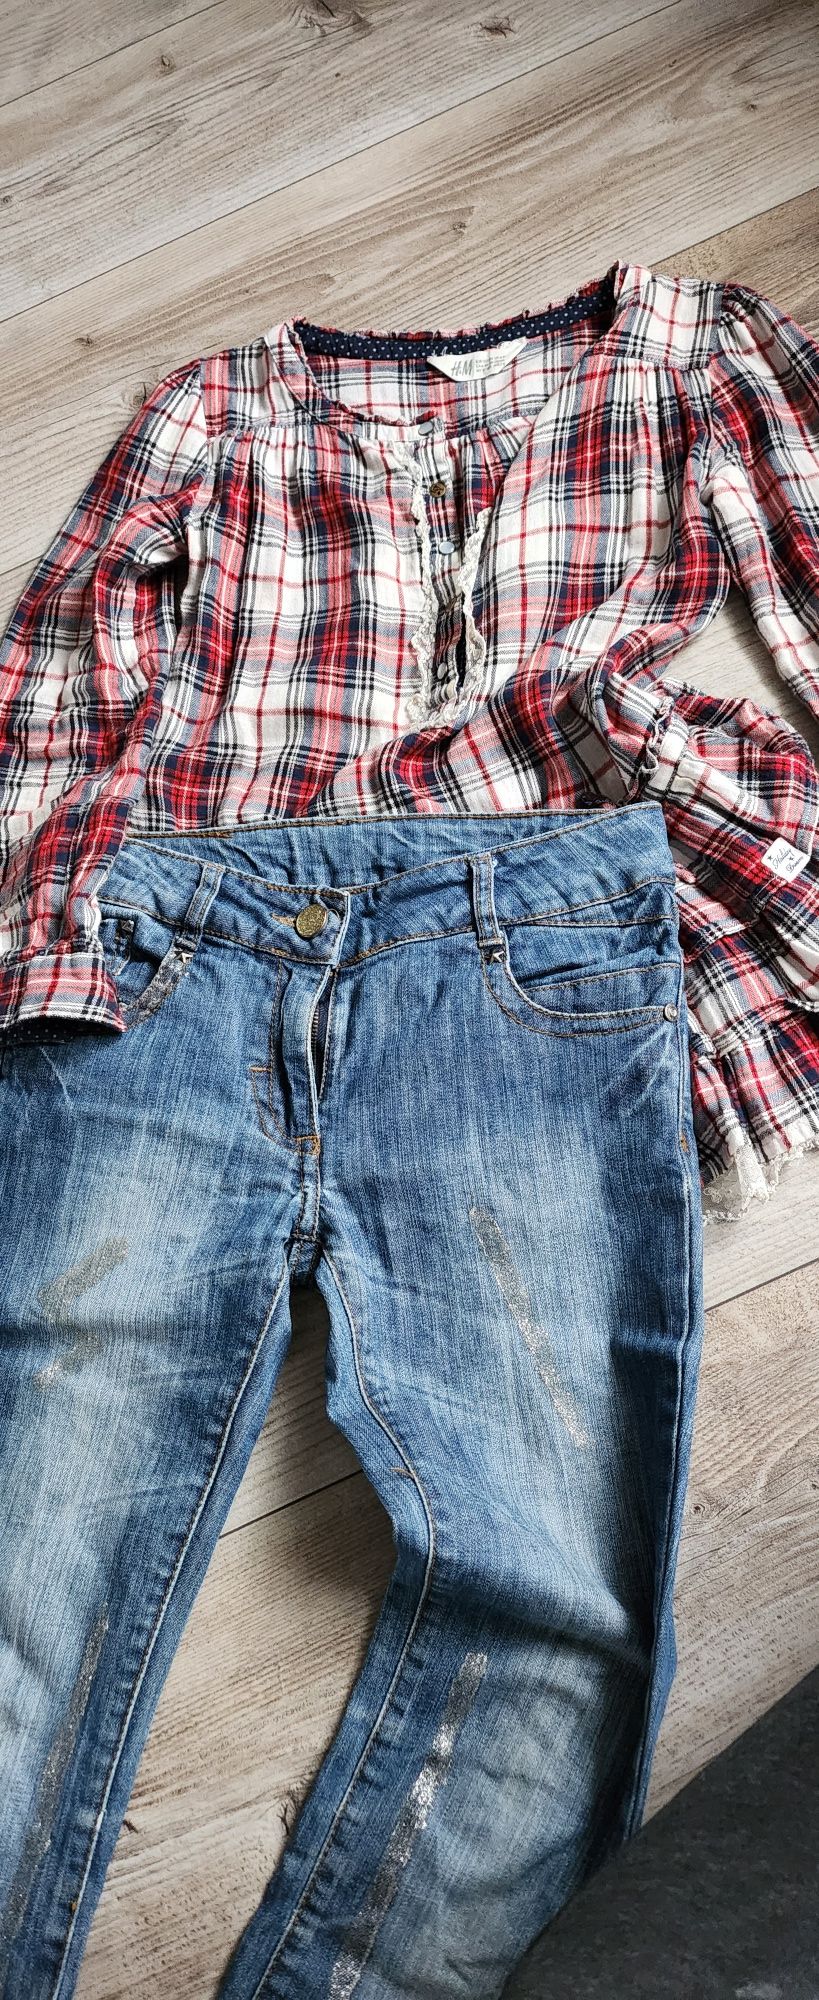 Spodnie jeansy dziewczęce ozdobione r.140